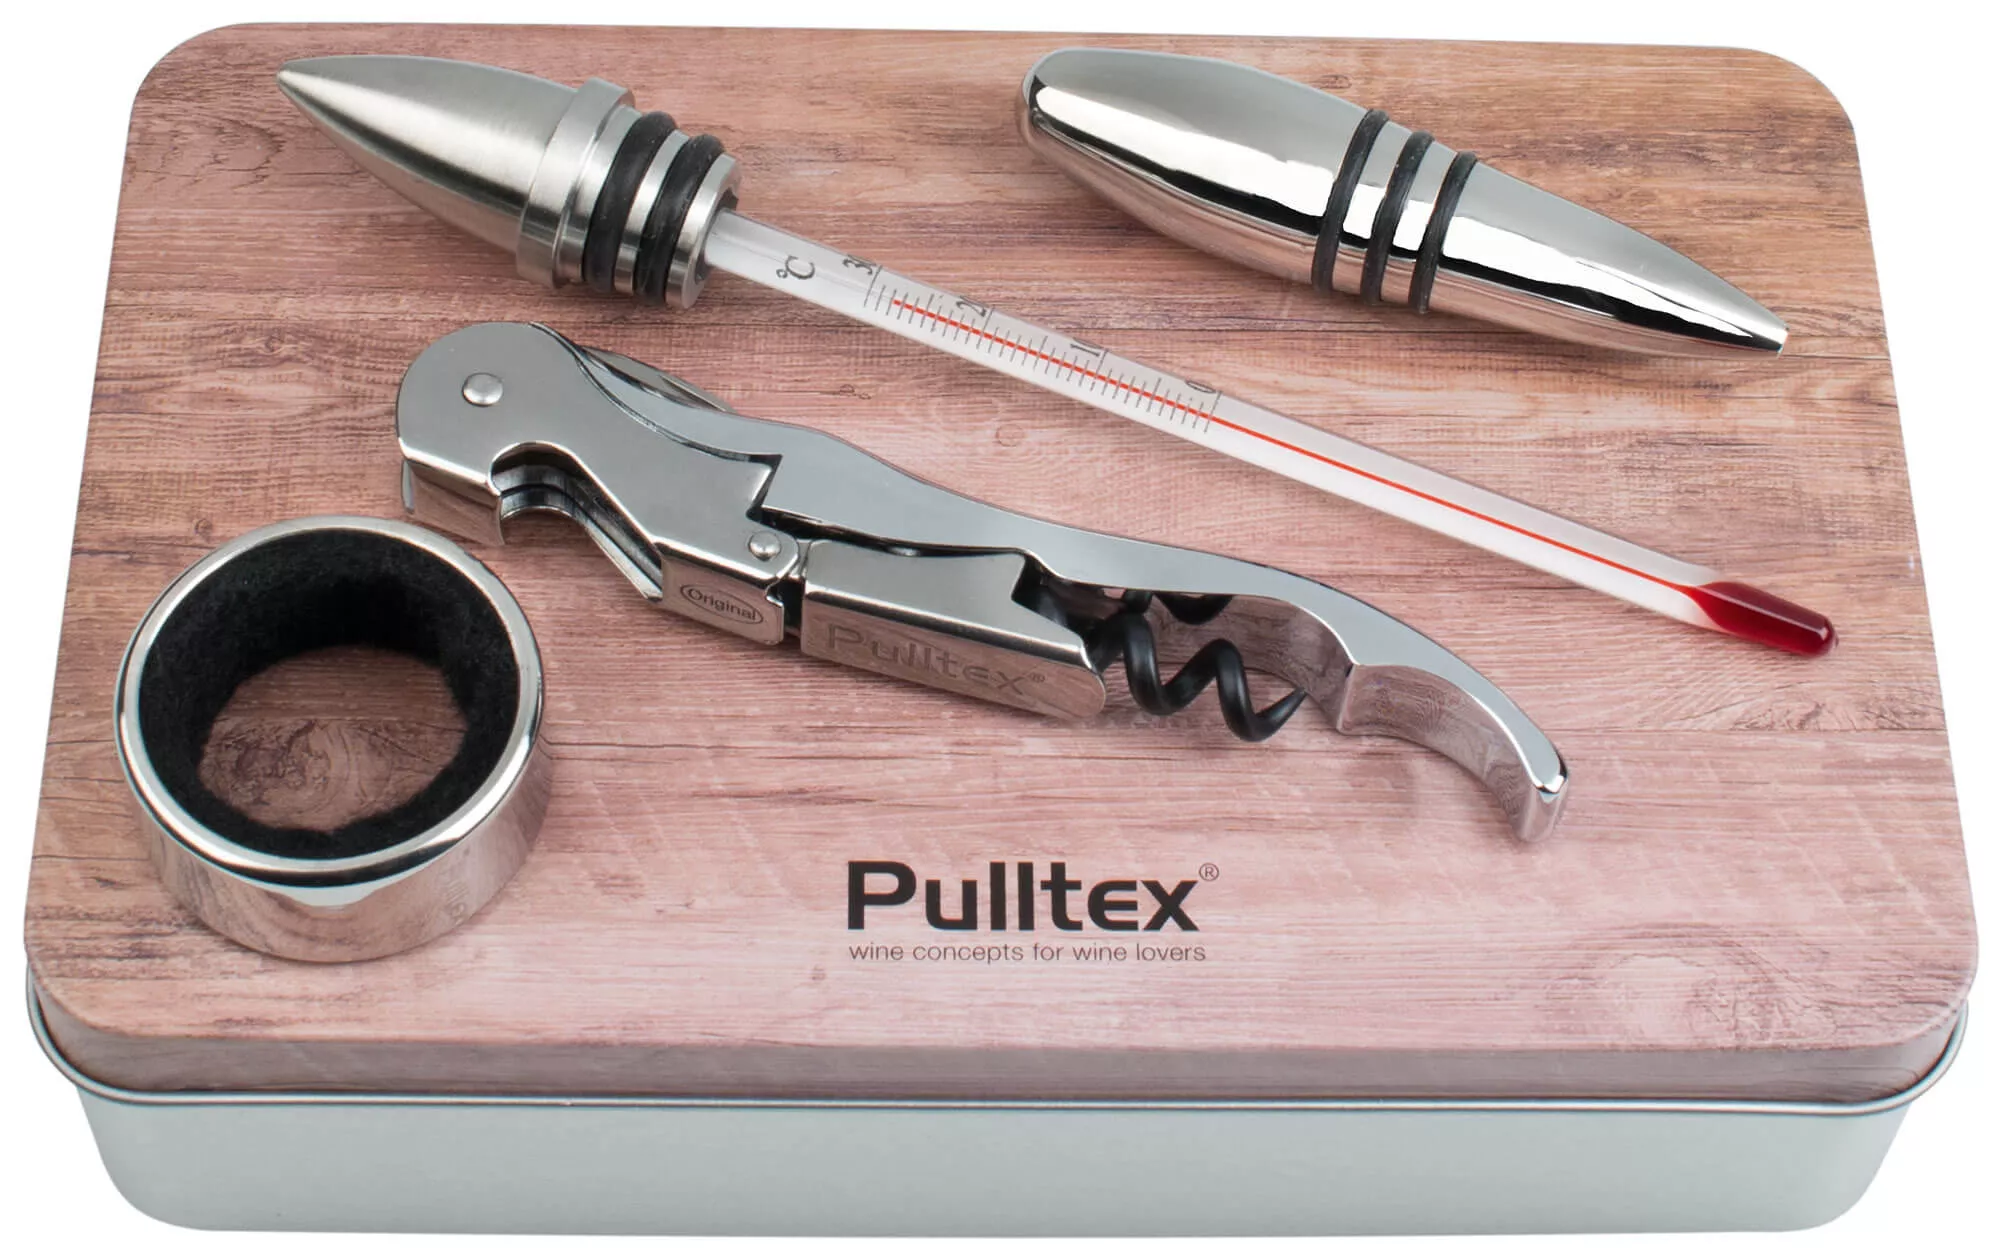 Corkscrew with blades - Pulltex